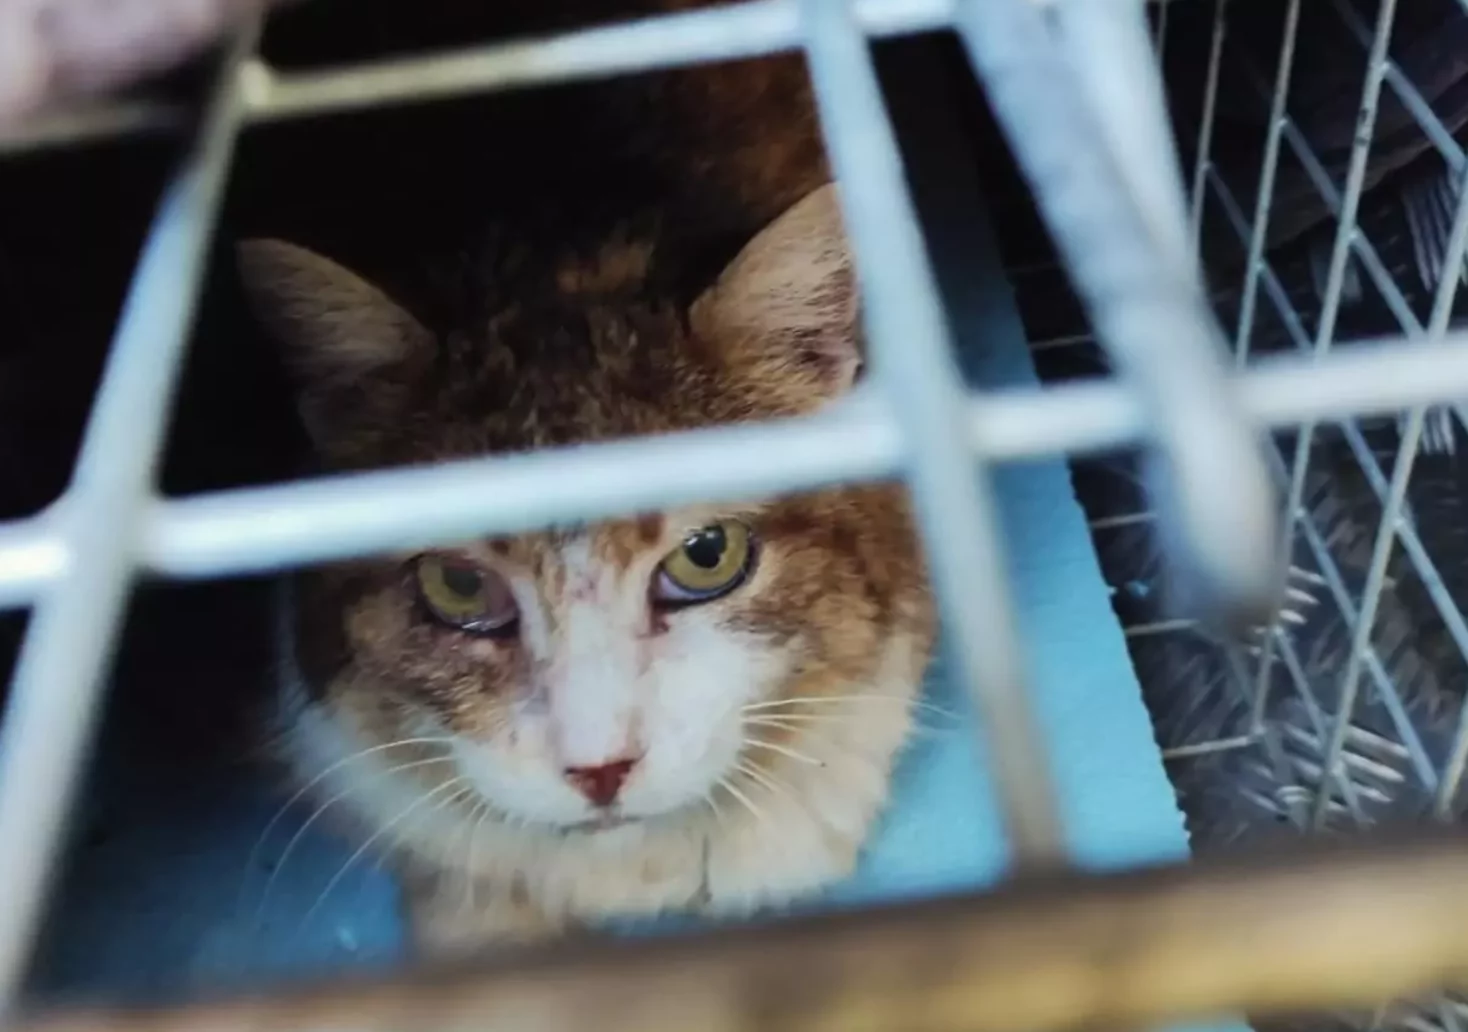 Tierrettung im Einsatz: Katze gerettet, verletzter Vogel versorgt